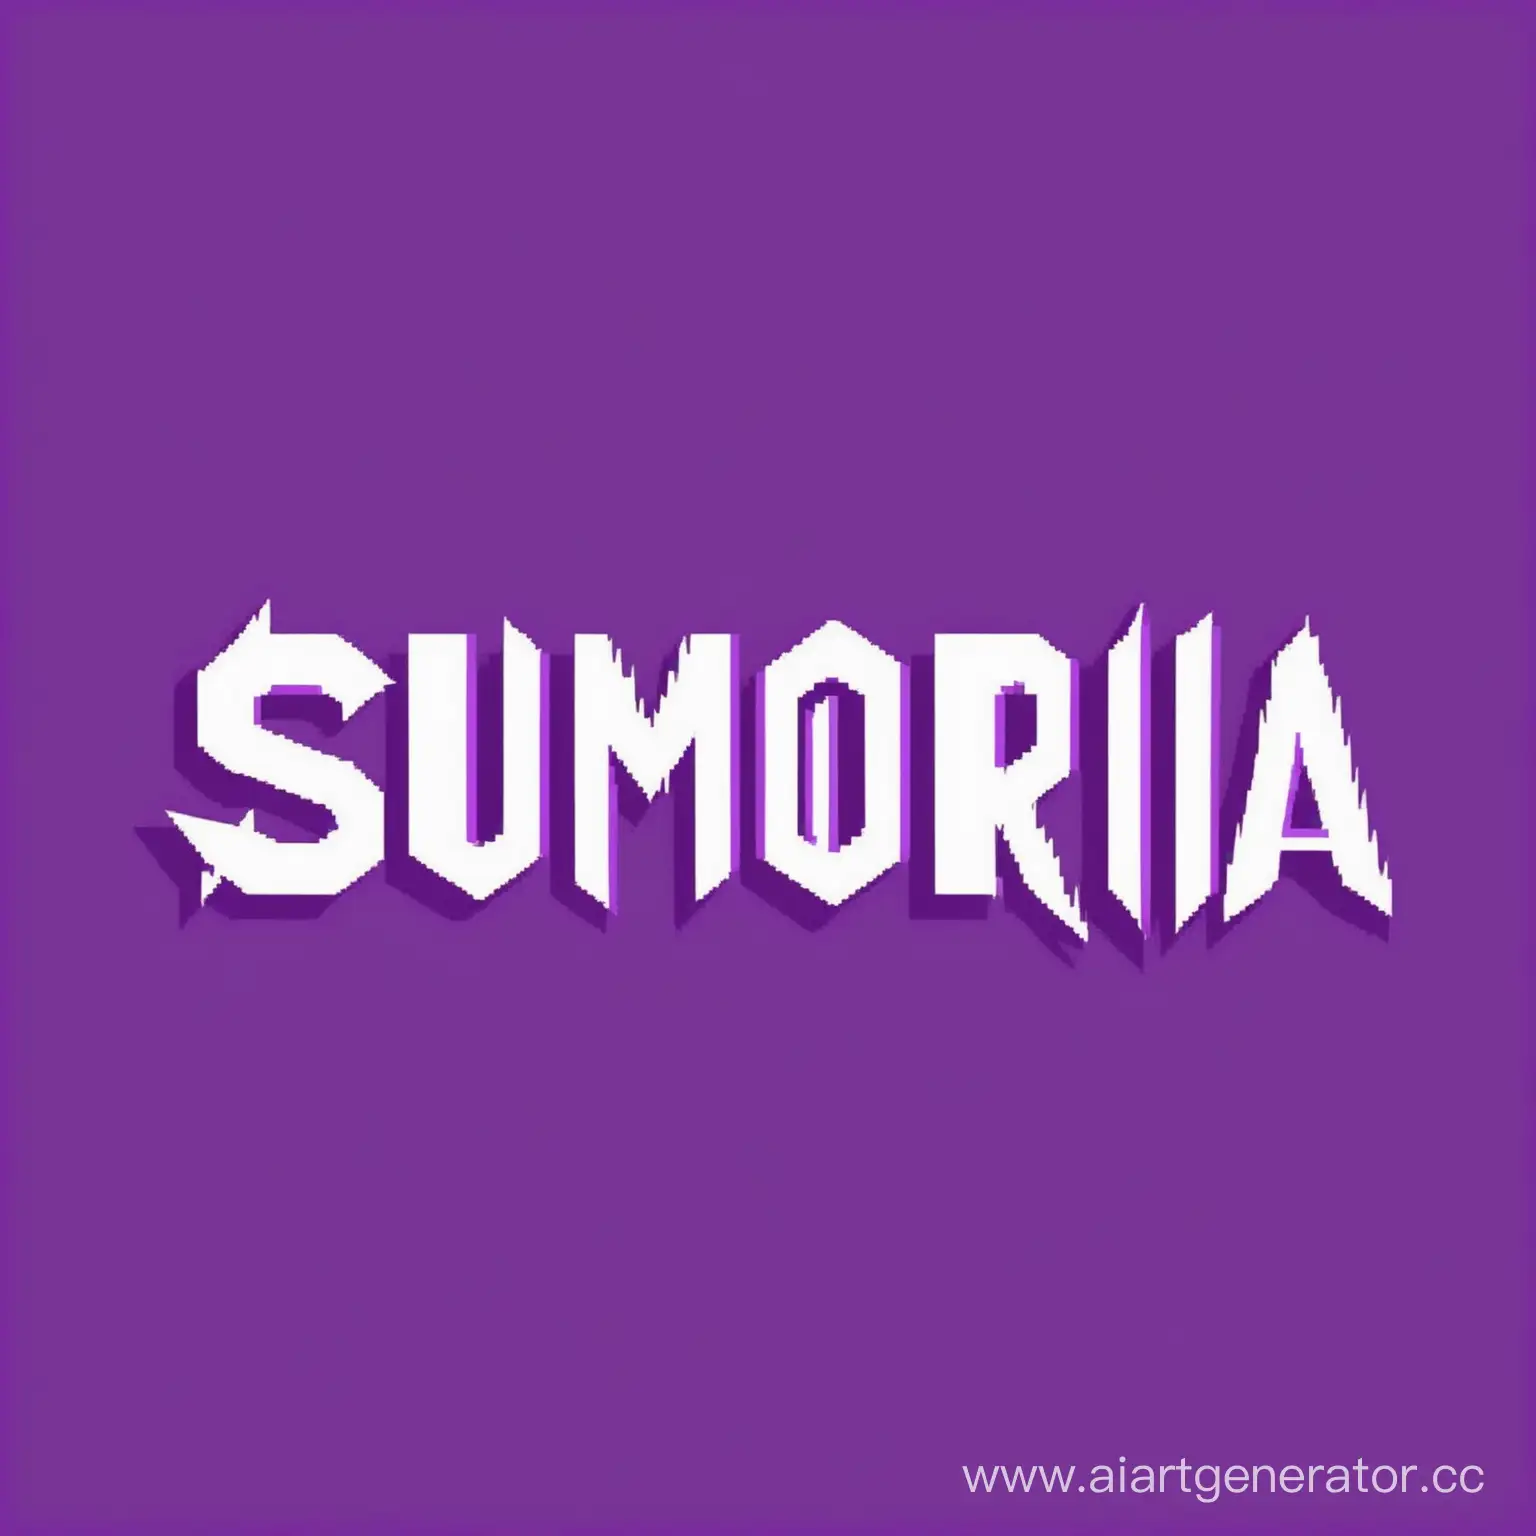 Сгенерируй логотип для проекта "Sumoria". Он должен придерживаться фиолетового тона и в нем могут фигурировать буквы "S" и "M"